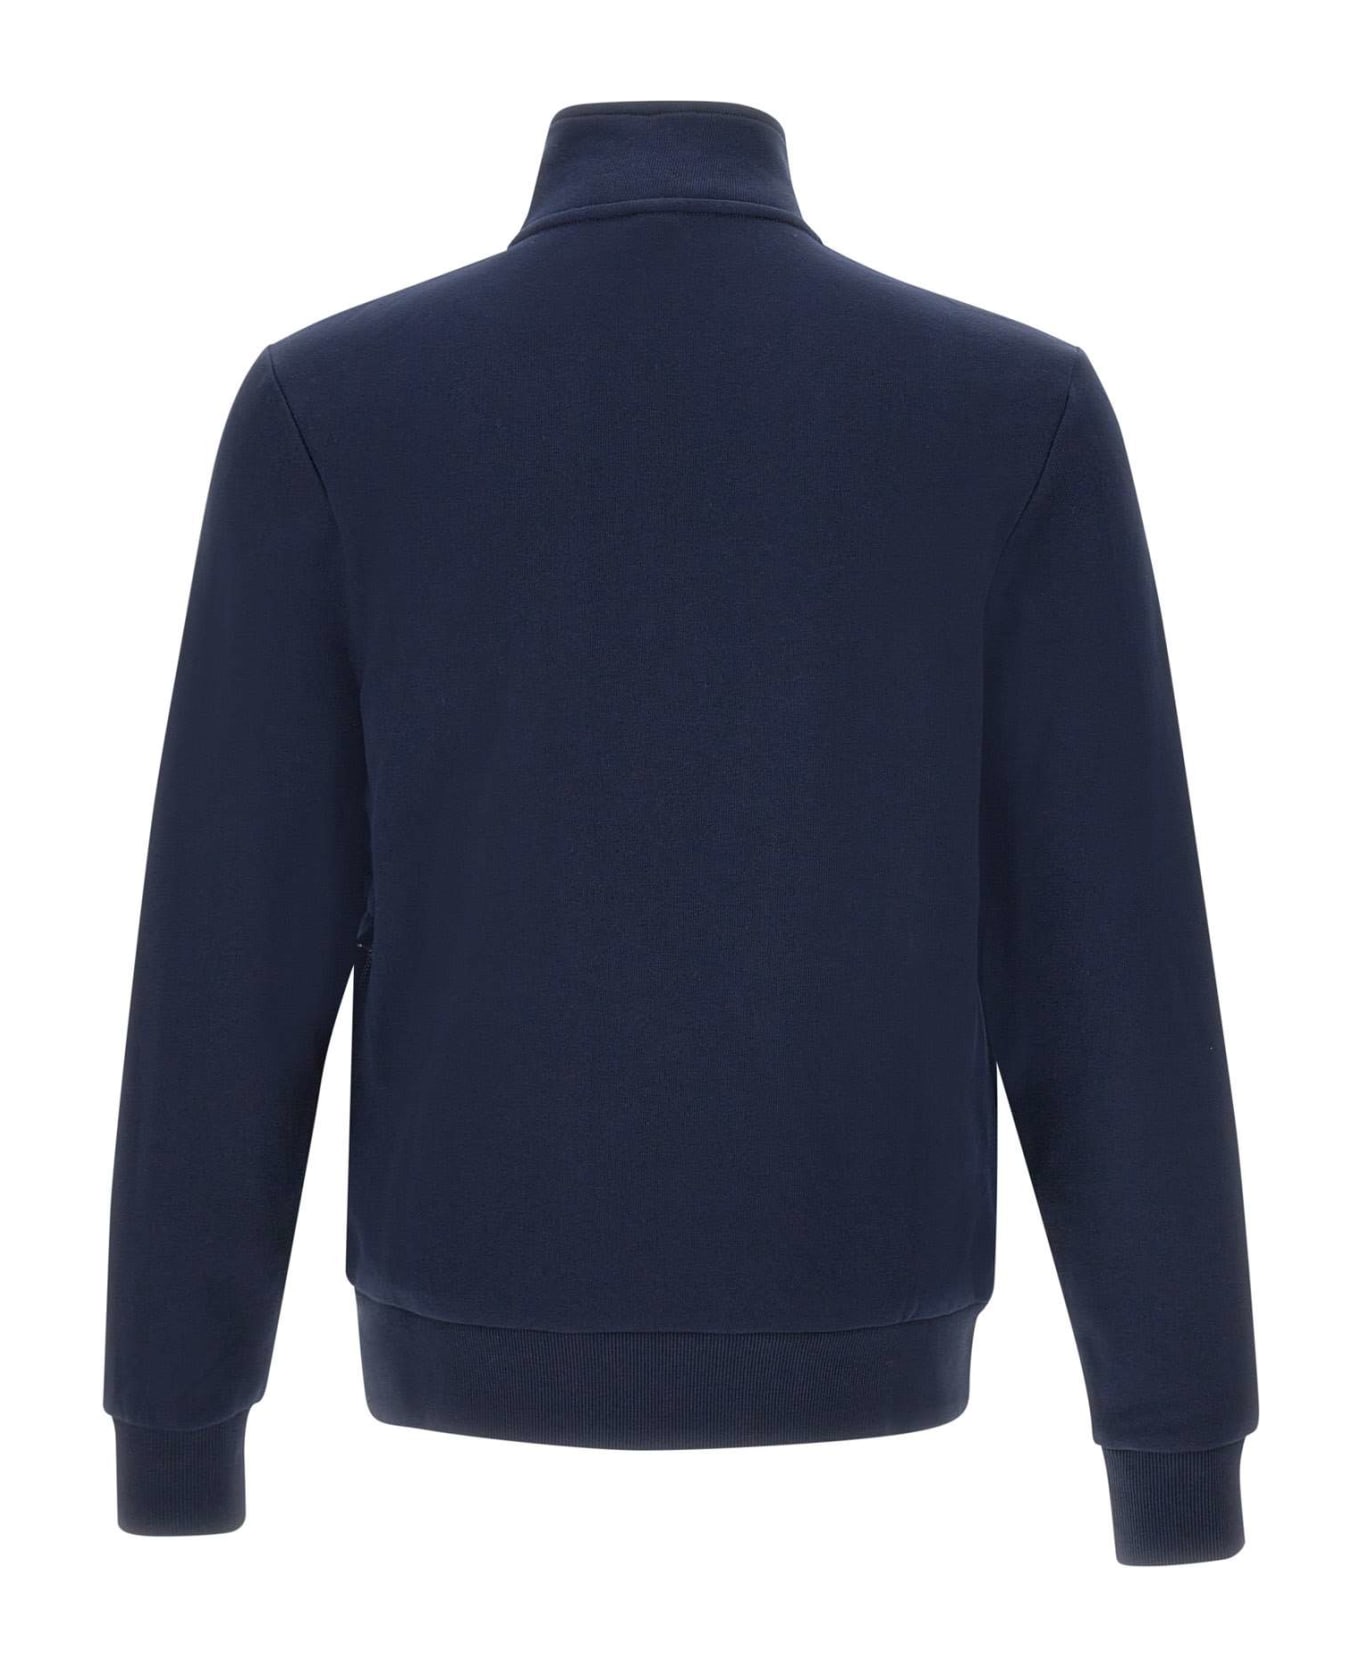 Sun 68 Cotton Sweatshirt Fleece - NAVY BLUE